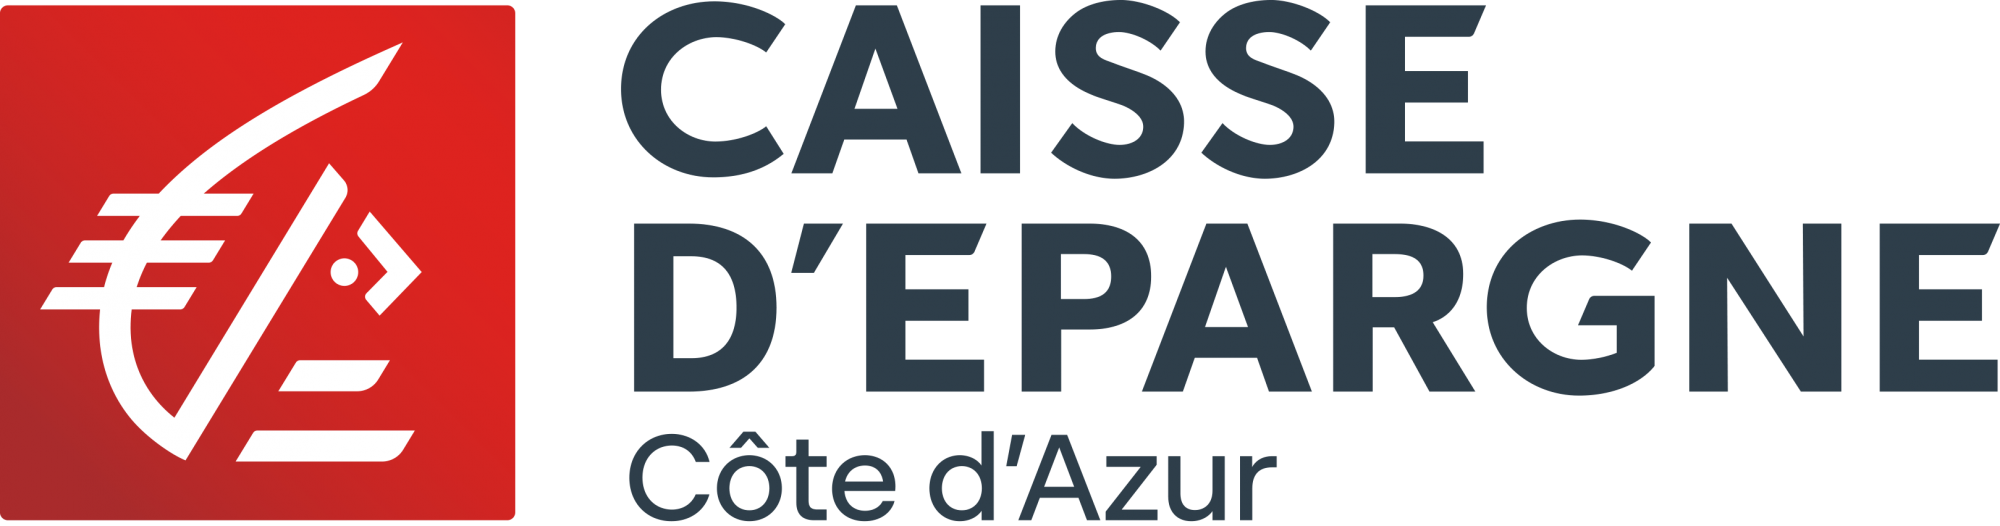 Caisse d'Épargne Cote d'Azur